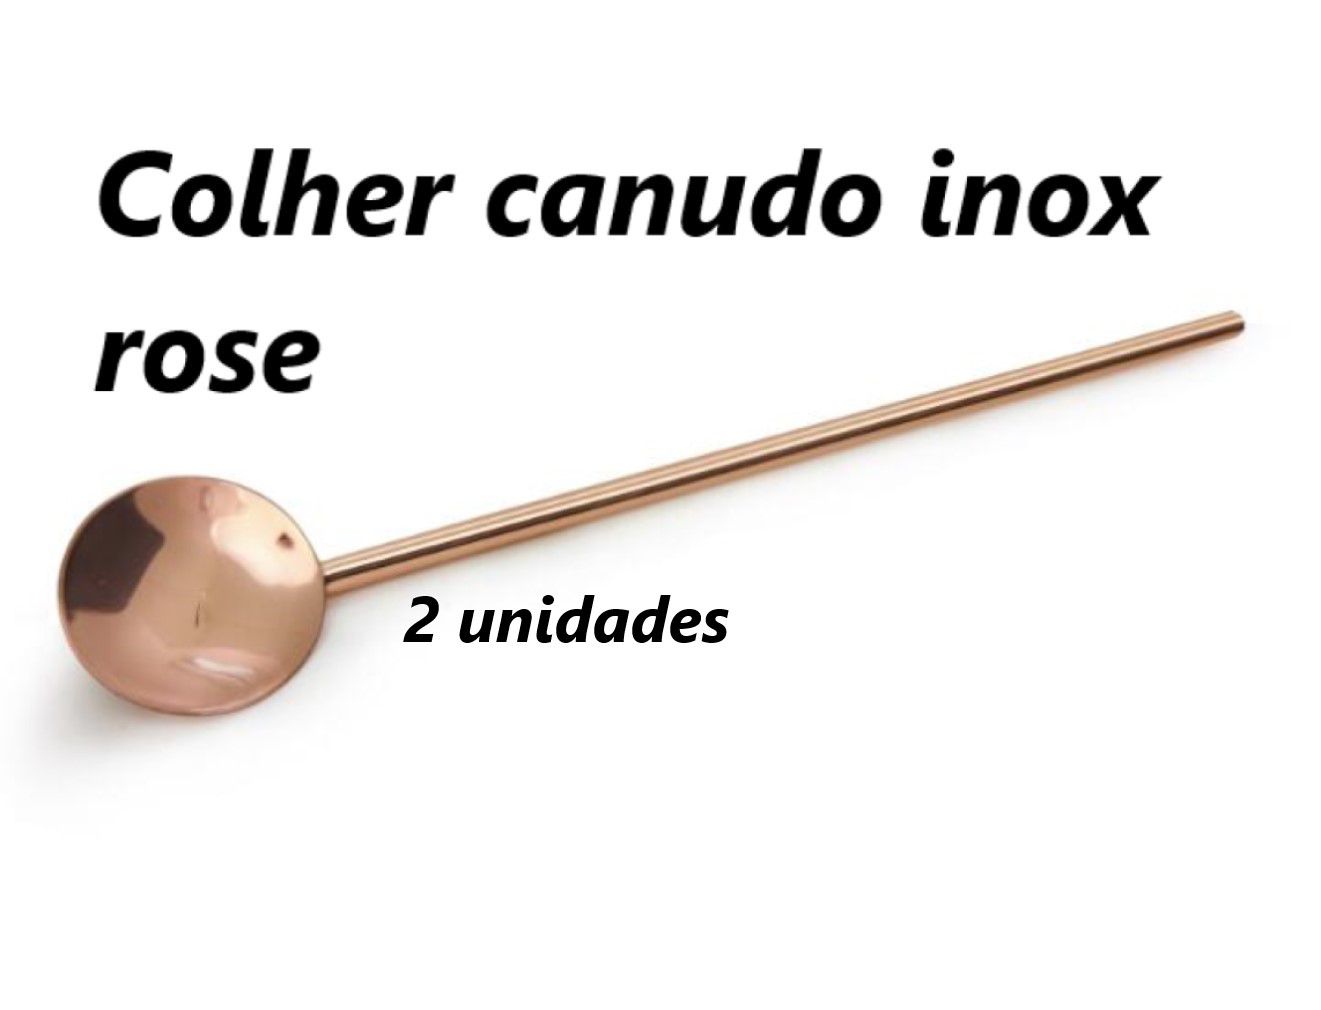 Colher para coquetel 2 unidades inox cobre rose suco drinks colher longa bailarina Mimo6452